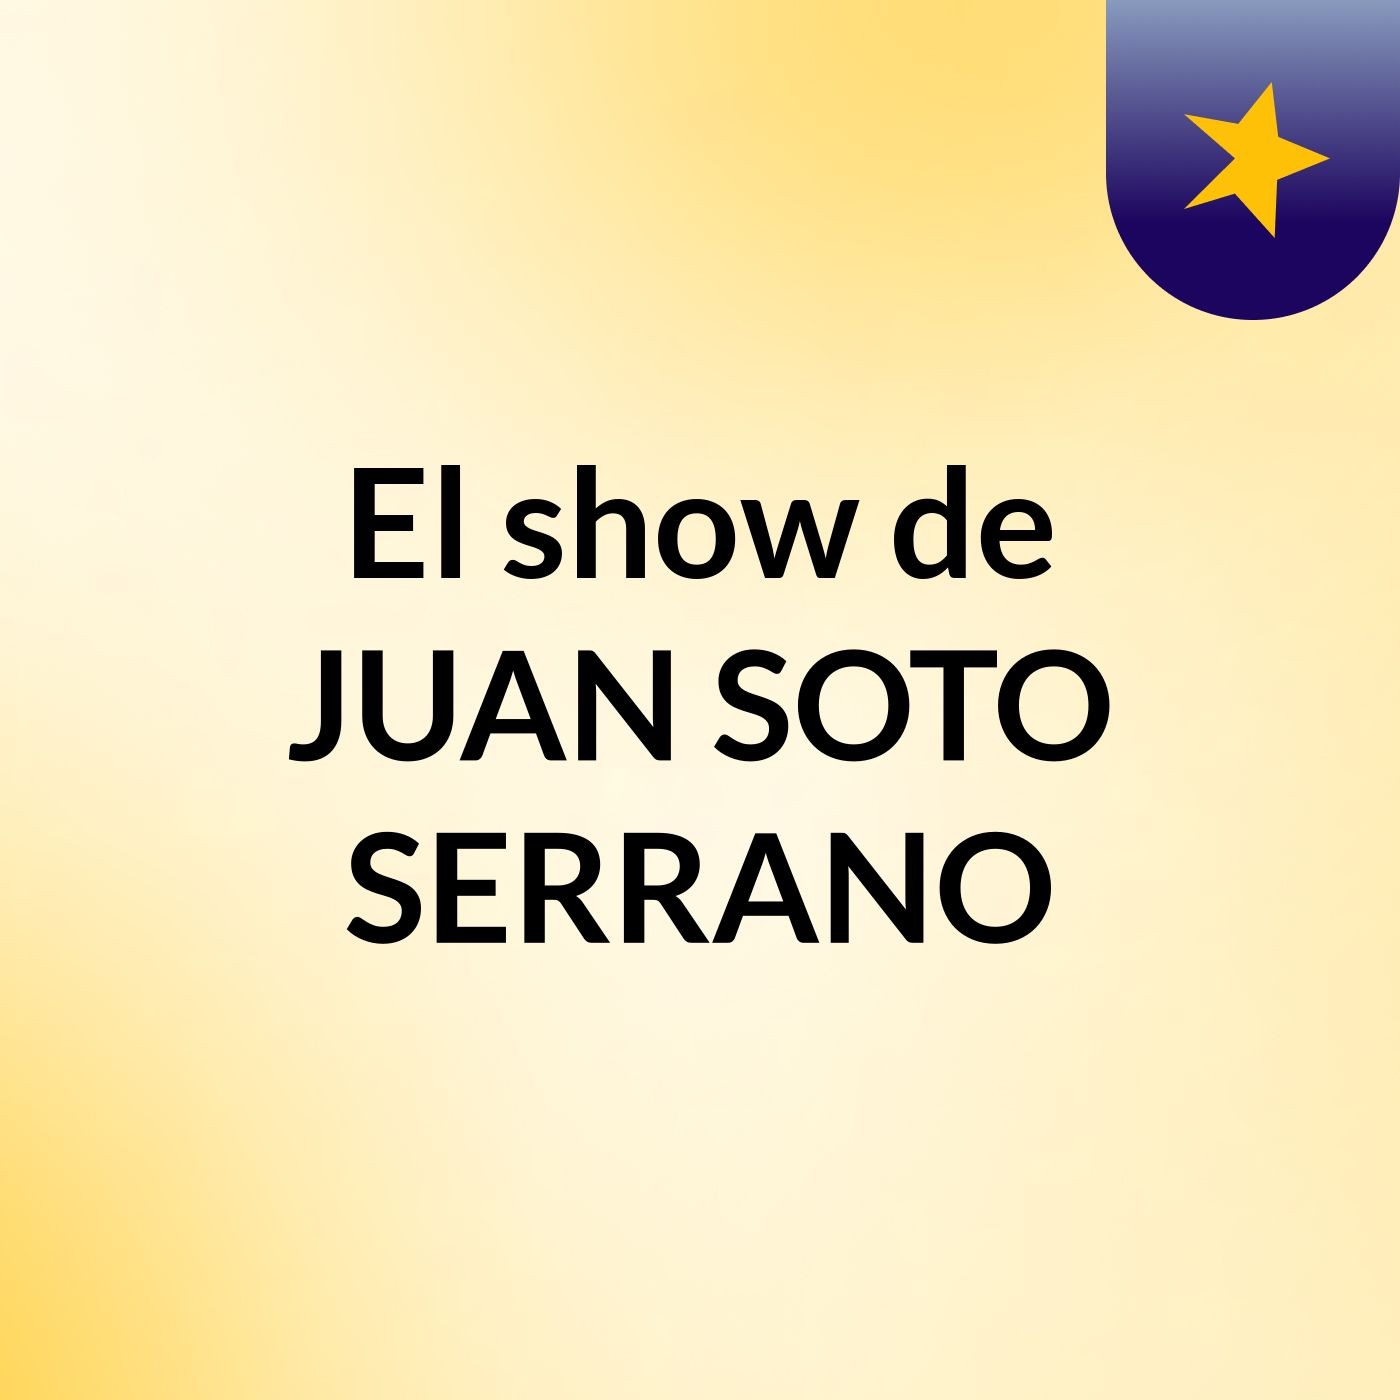 El show de JUAN SOTO SERRANO